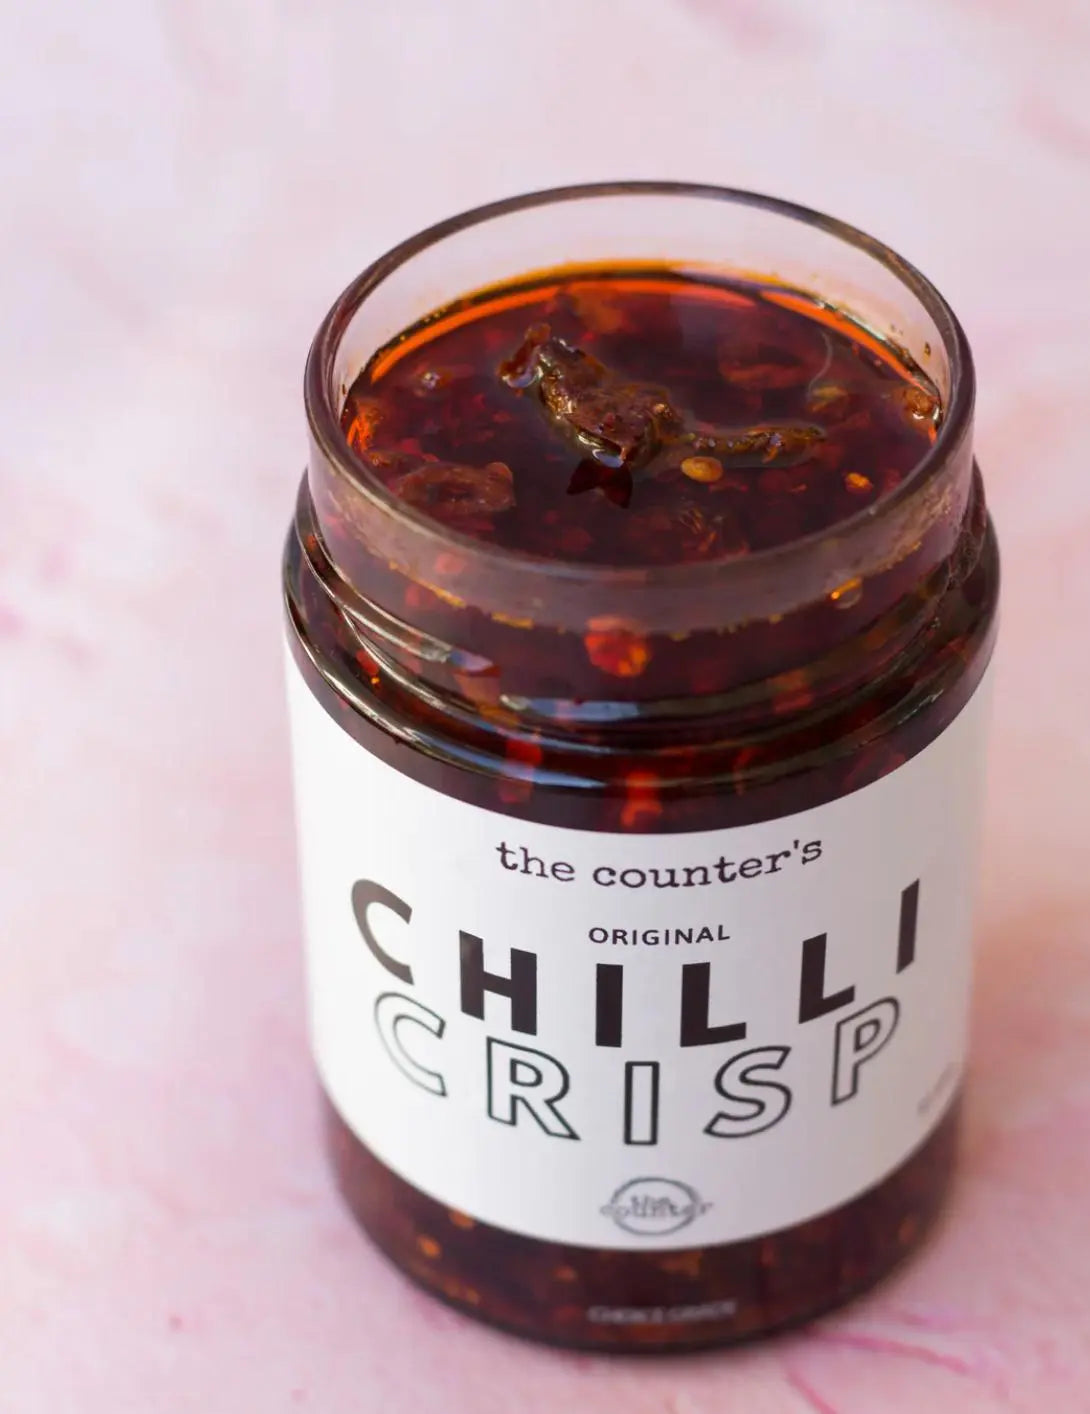 Original Chilli Crisp The Counter